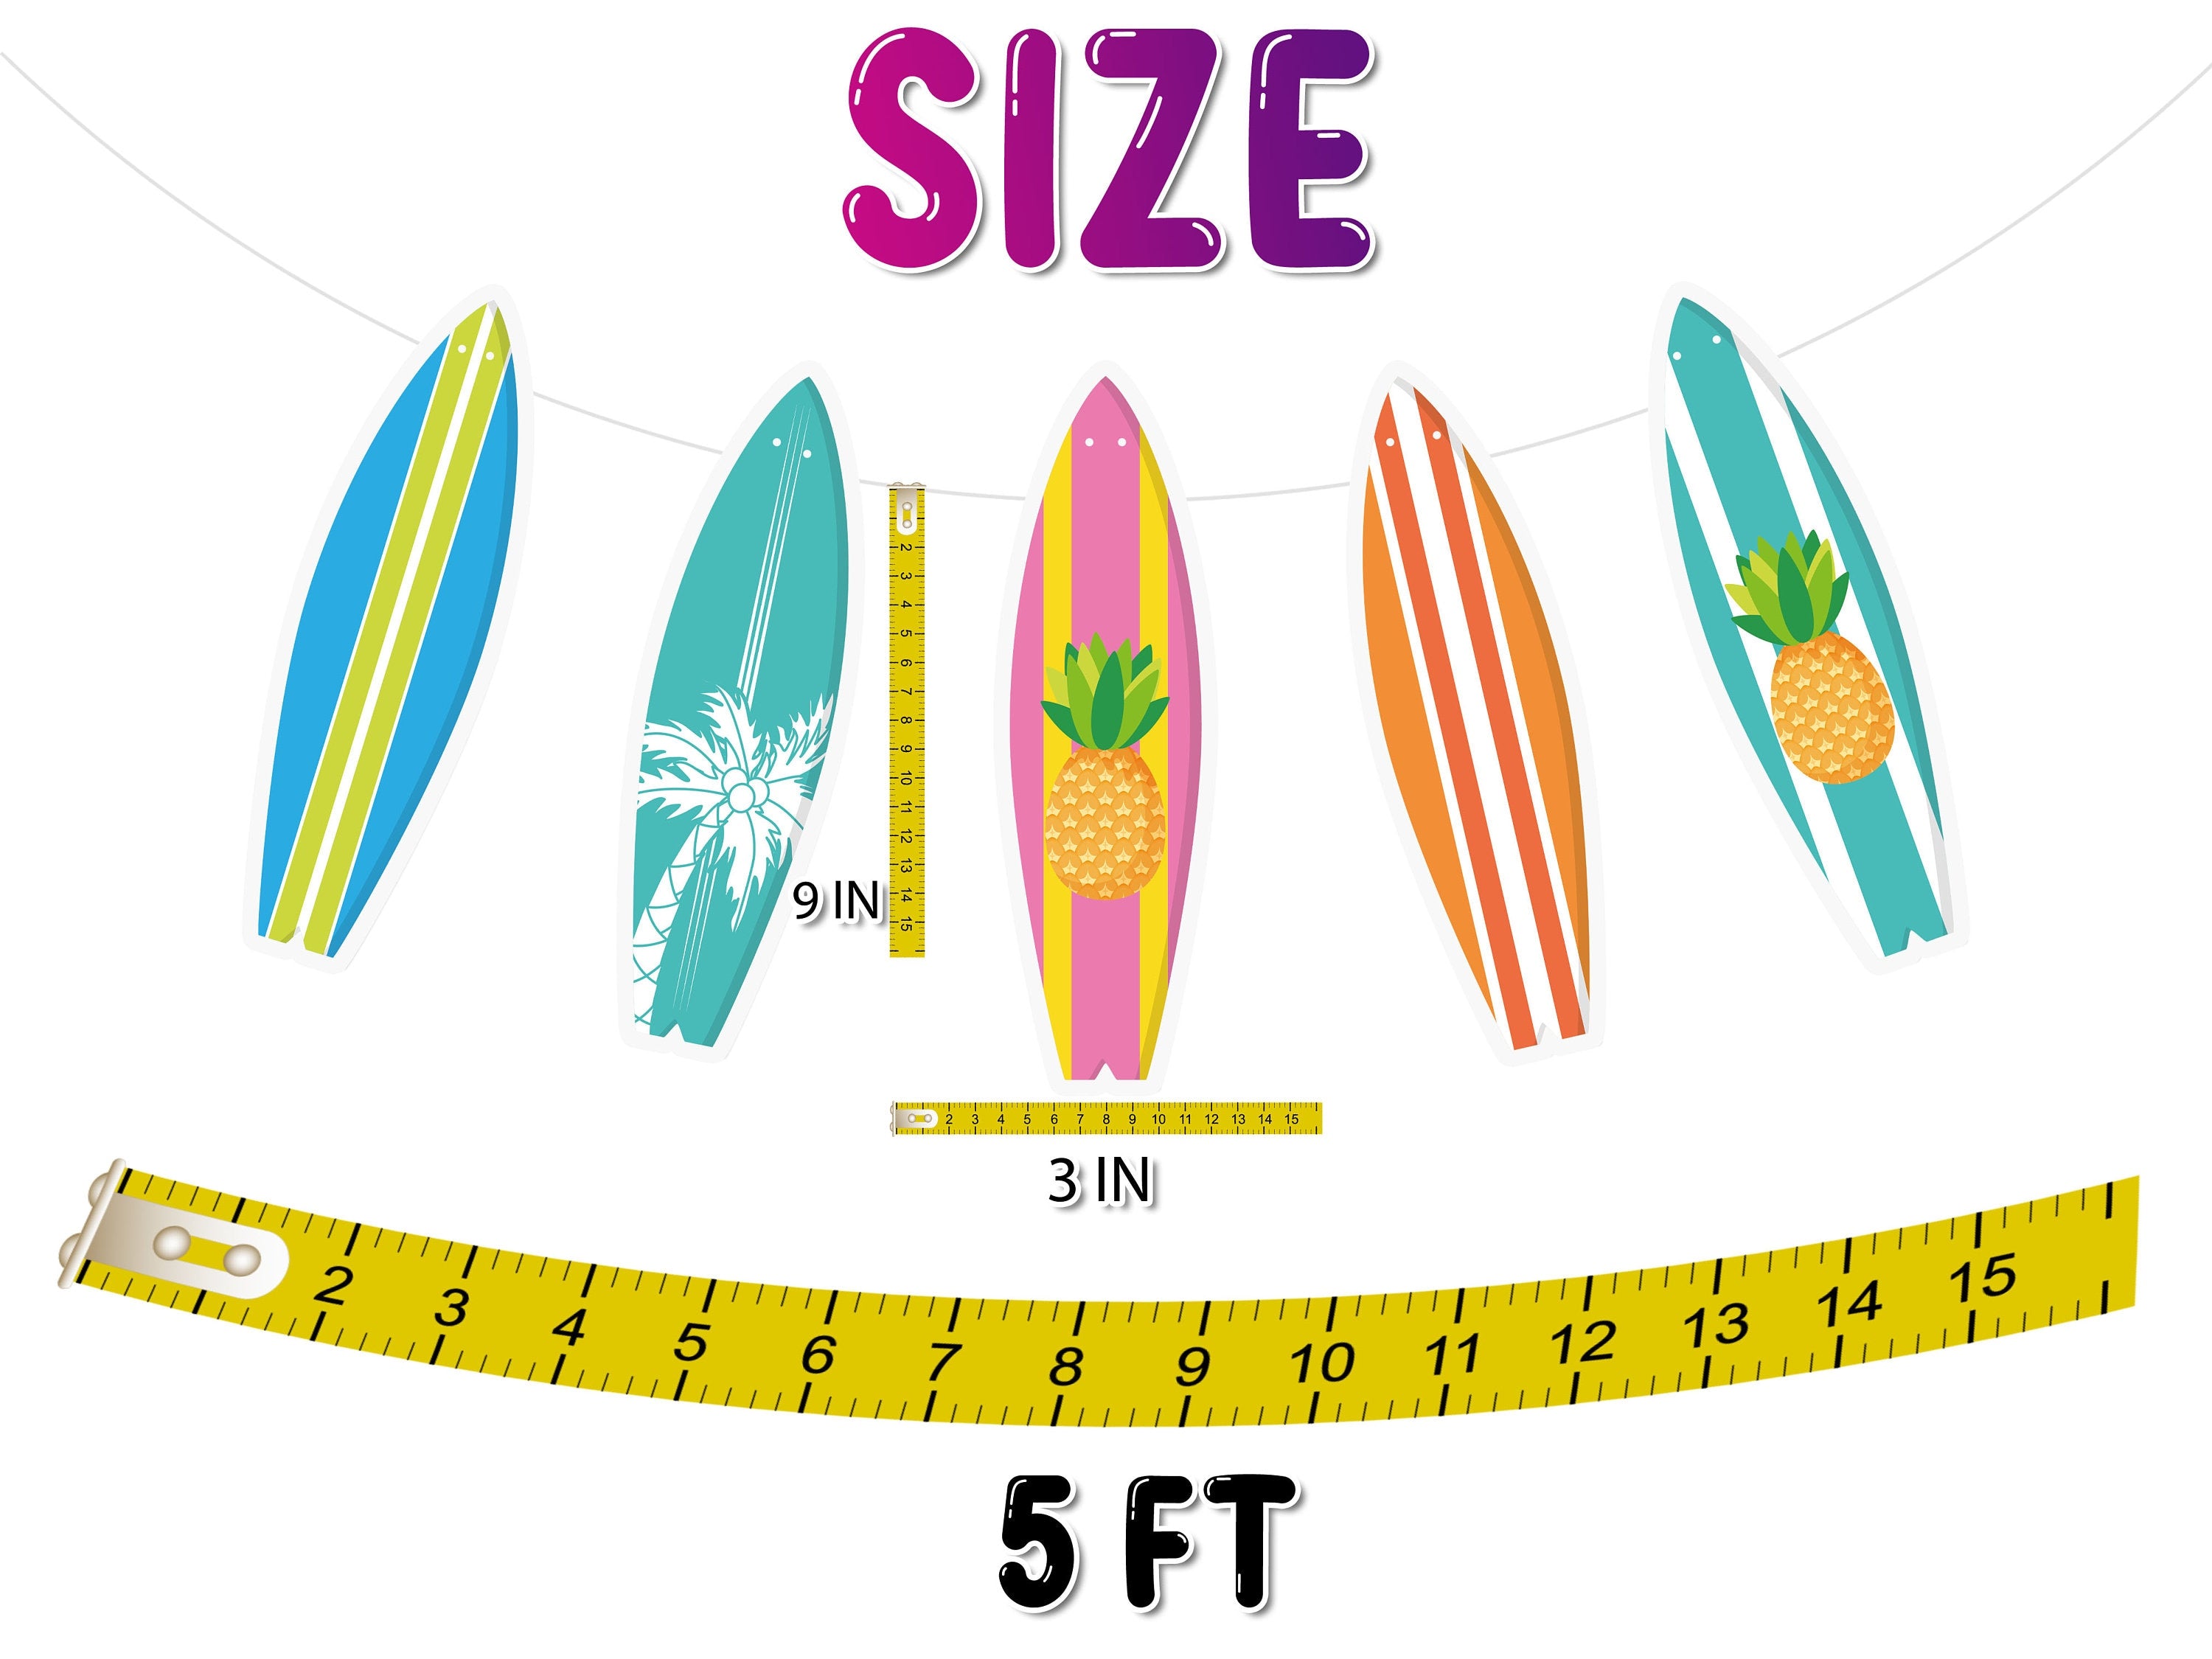 Surf's Up! Vibrant Surfboard Cartoon Banner - Beach Themed Decor